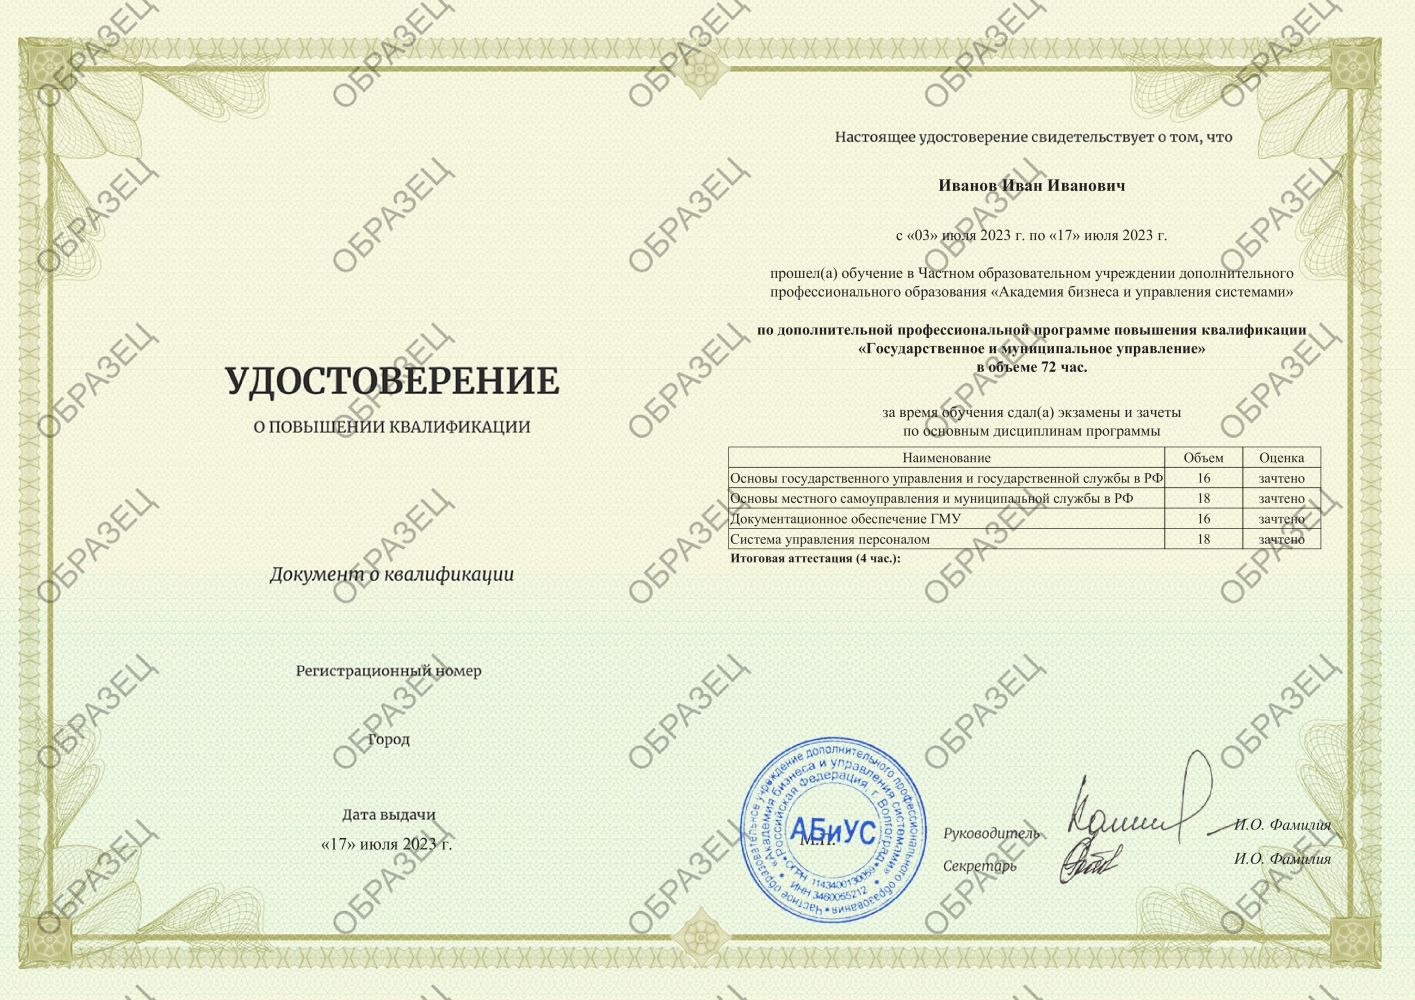 Удостоверение Государственное и муниципальное управление 72 часа 5250 руб.